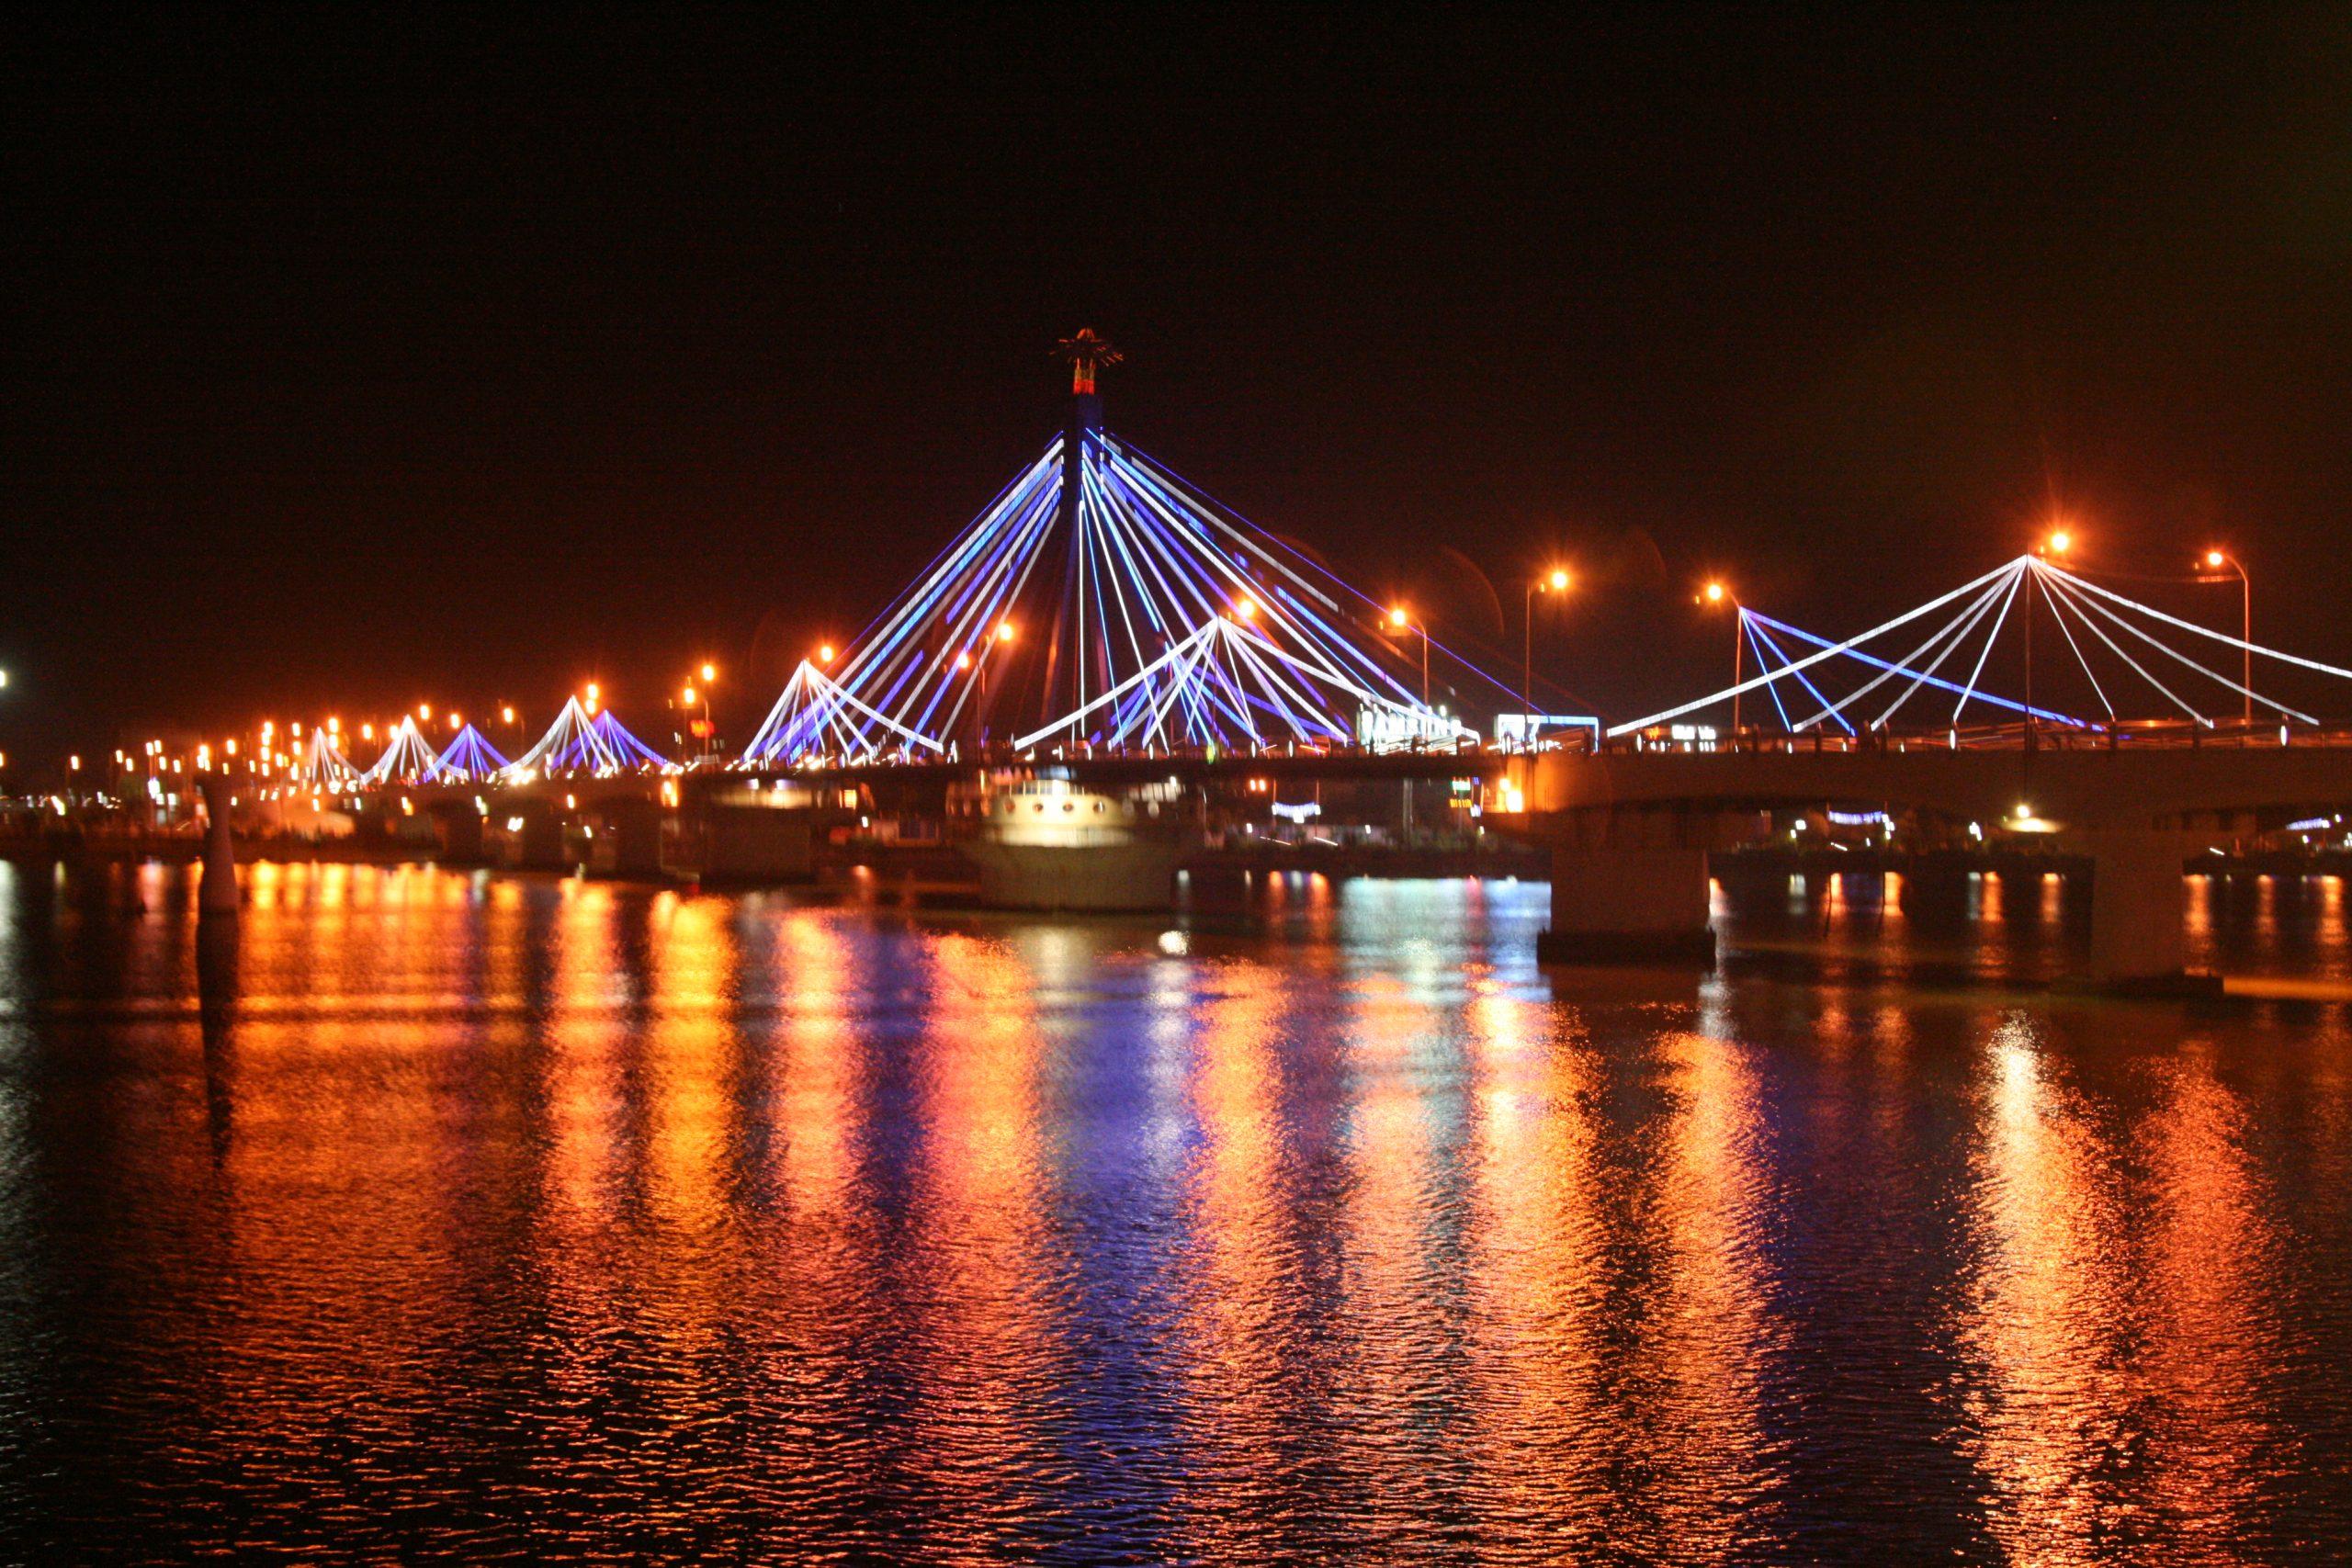 Sông Hàn Đà Nẵng lung linh ánh đèn khi trời về đêm. Ảnh: Internet.